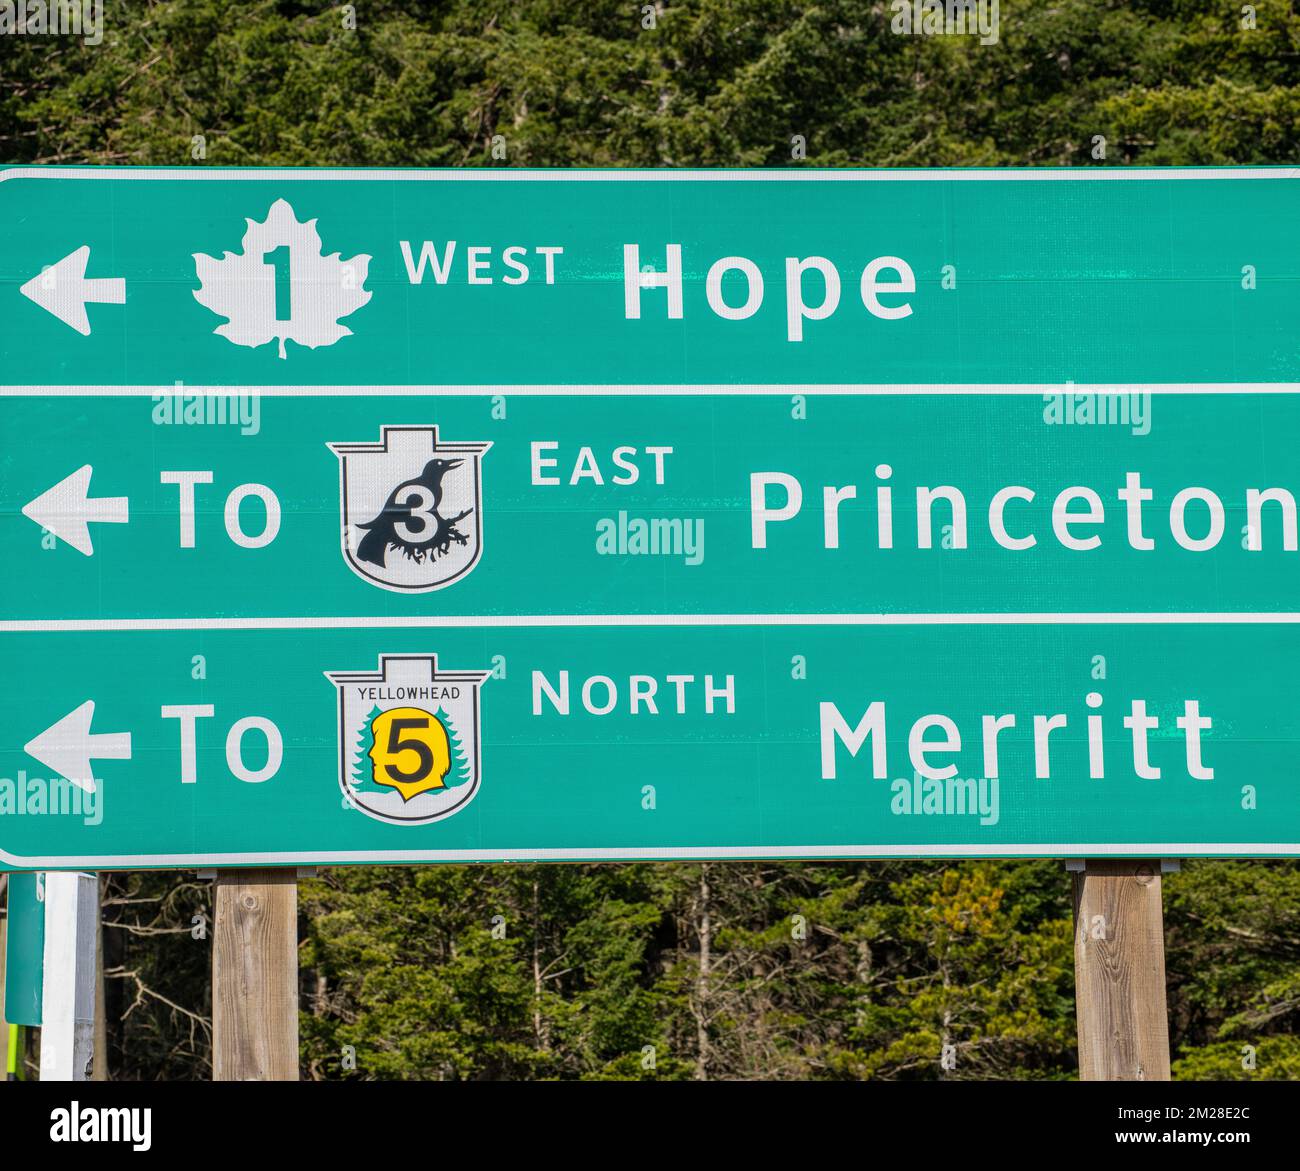 Wegweiser zu Hope, Princeton und Merritt an der Autobahnkreuzung in Hope, British Columbia, Kanada Stockfoto